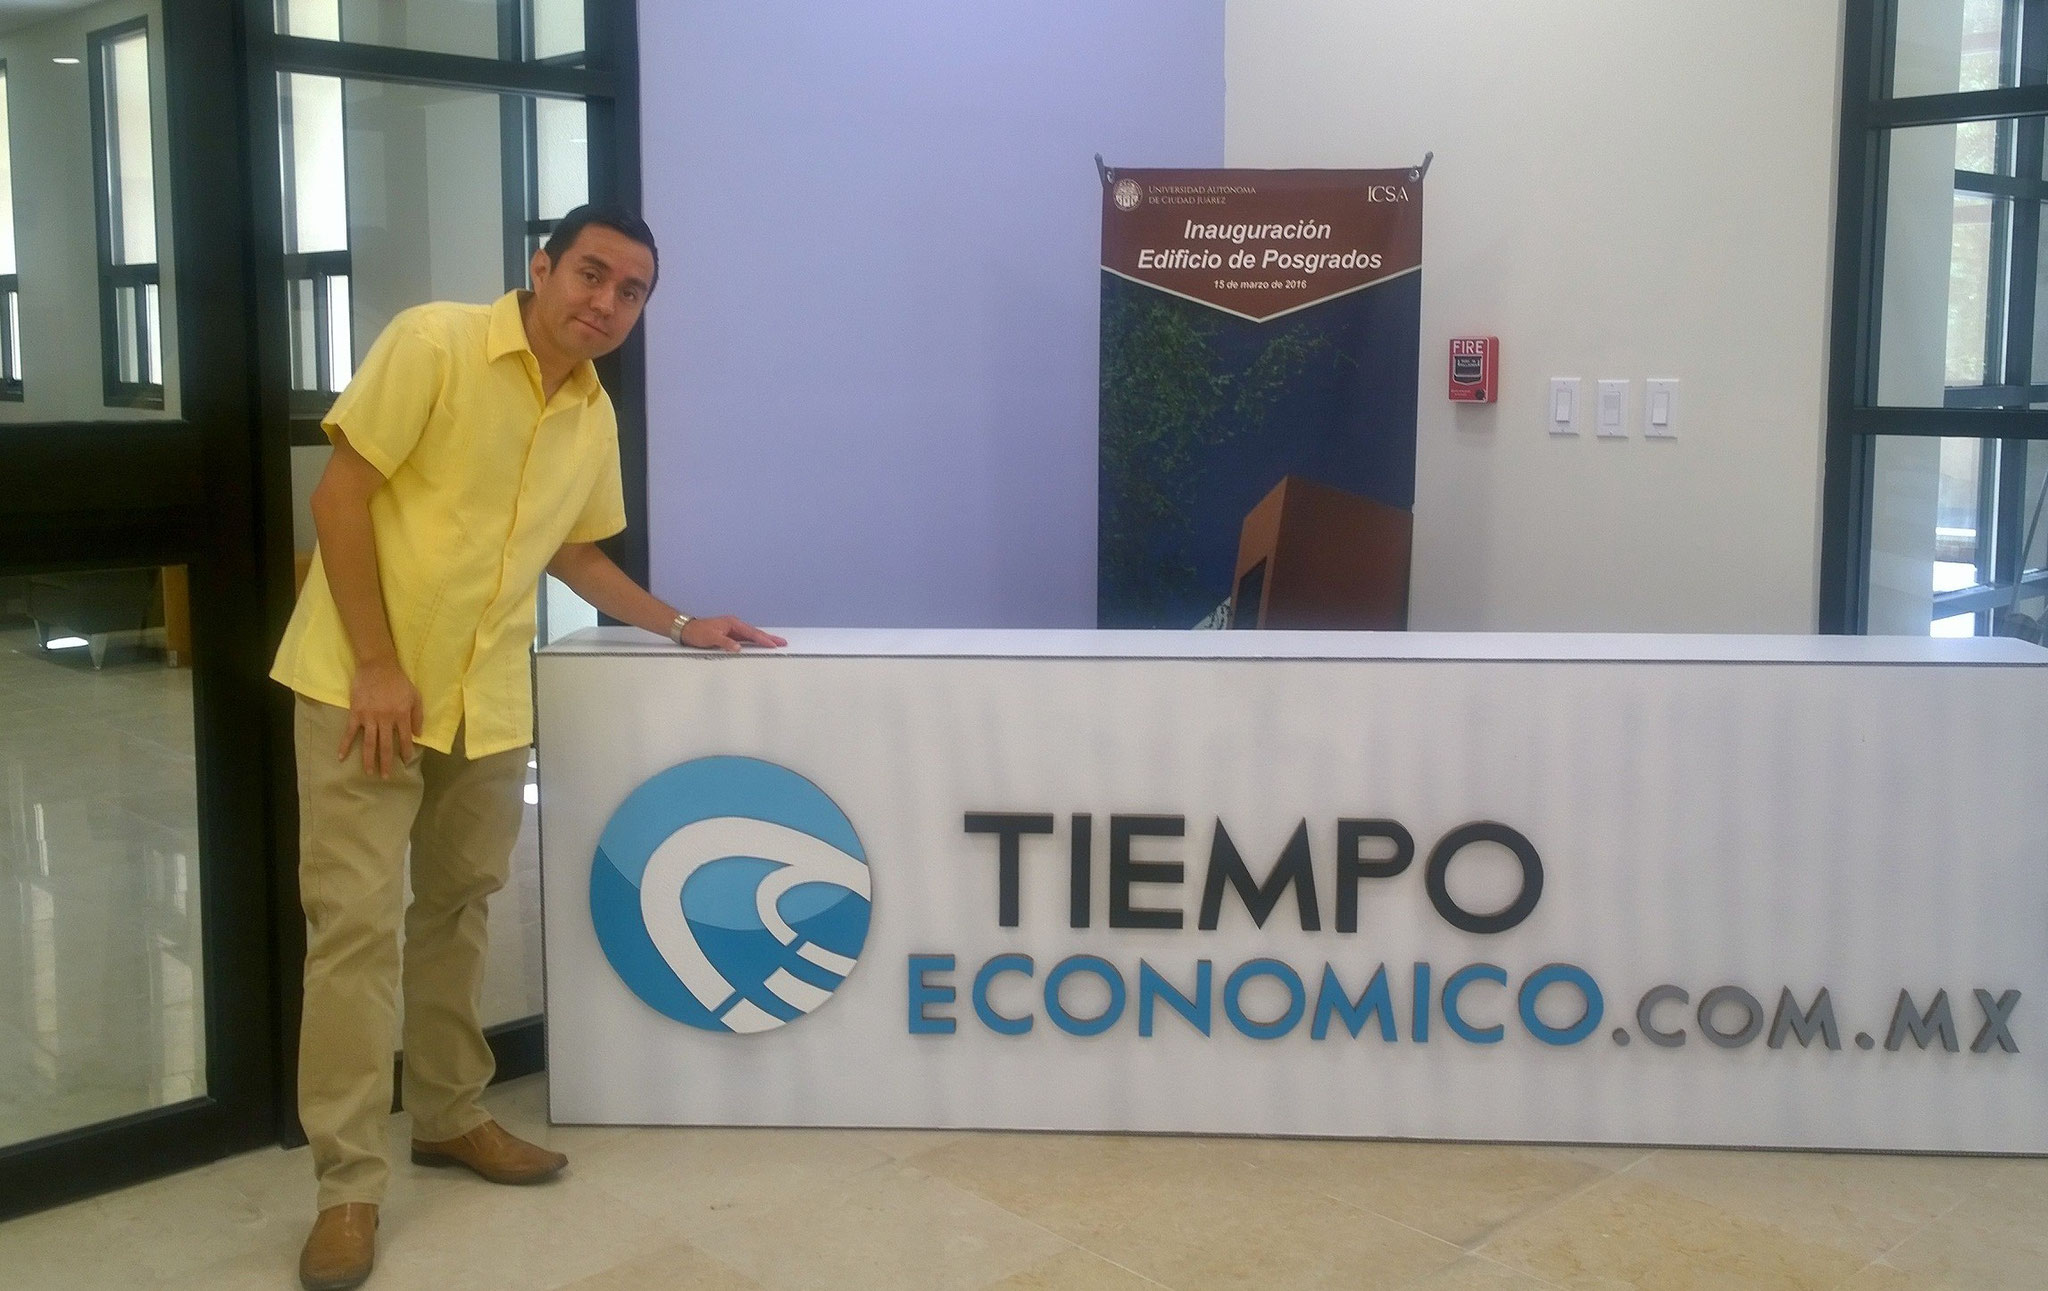 Promoción en la UACJ de Tiempo Económico, 2016.